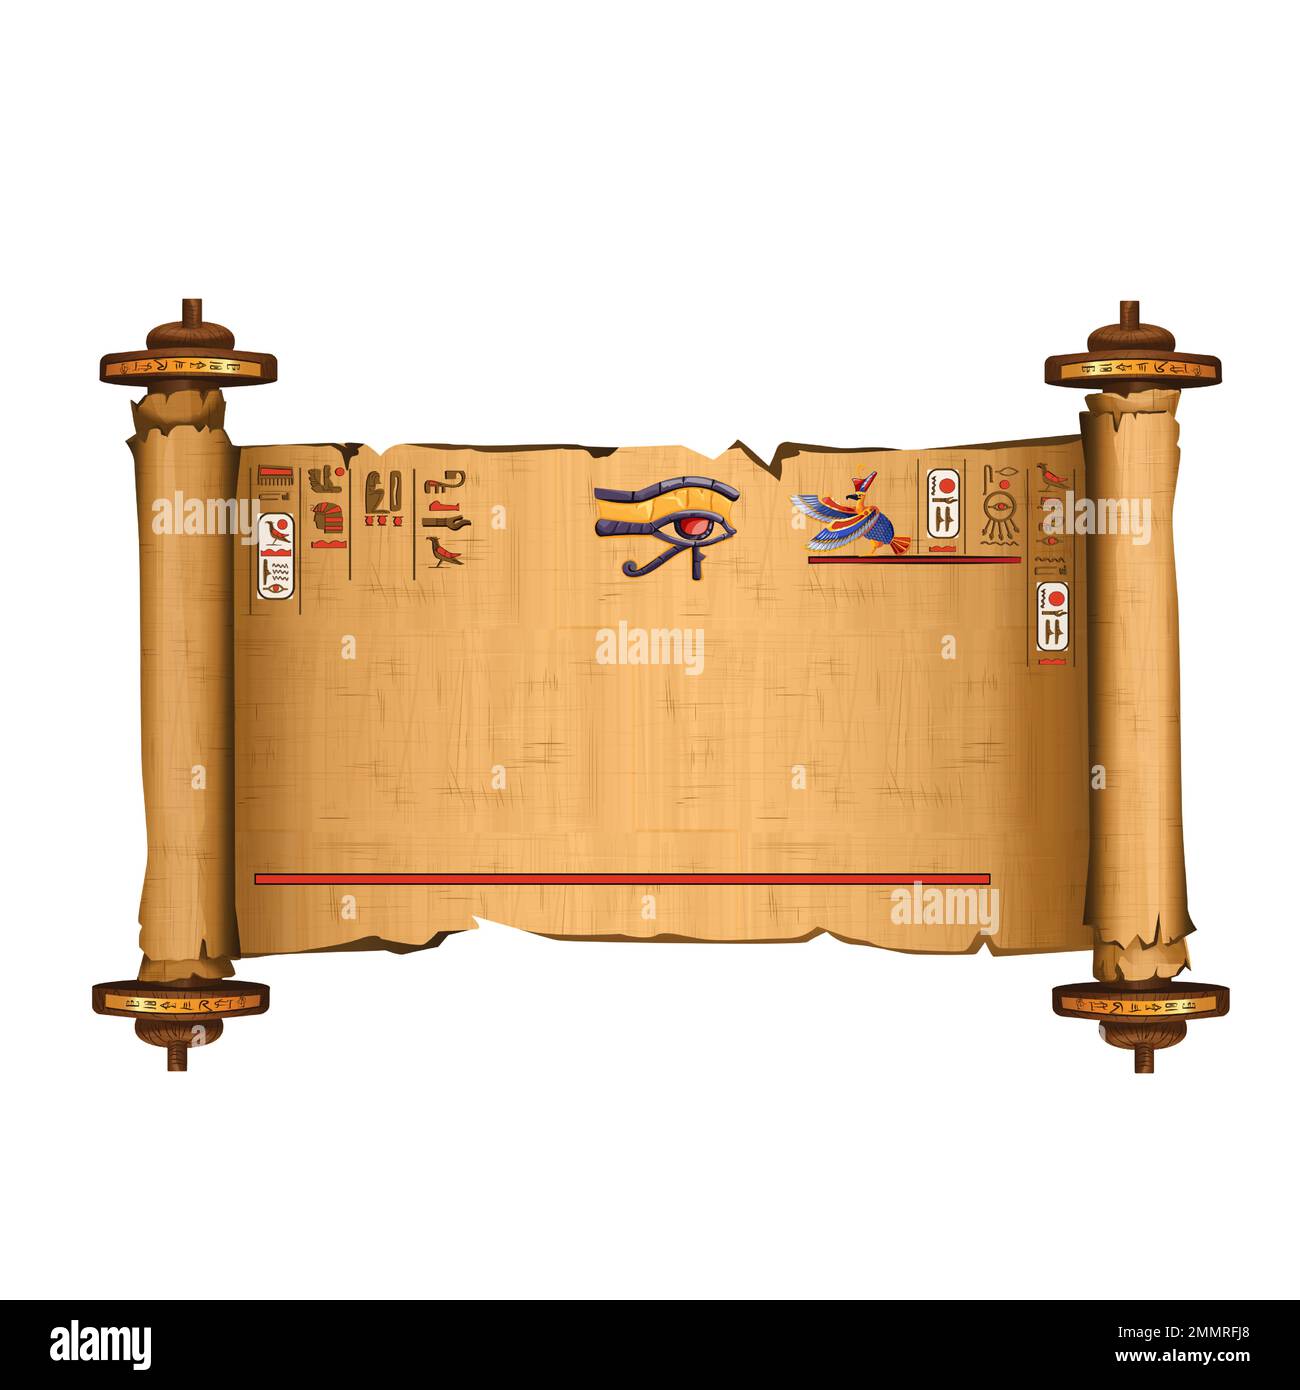 Alte ägyptische Papyrus-Schriftrolle mit Holzstäben und Hieroglyphen Cartoon-Vektordarstellung. Ägyptisches Kultursymbol, entfaltetes antikes Papier mit Holzstäbchen, isoliert auf weißem Hintergrund Stock Vektor